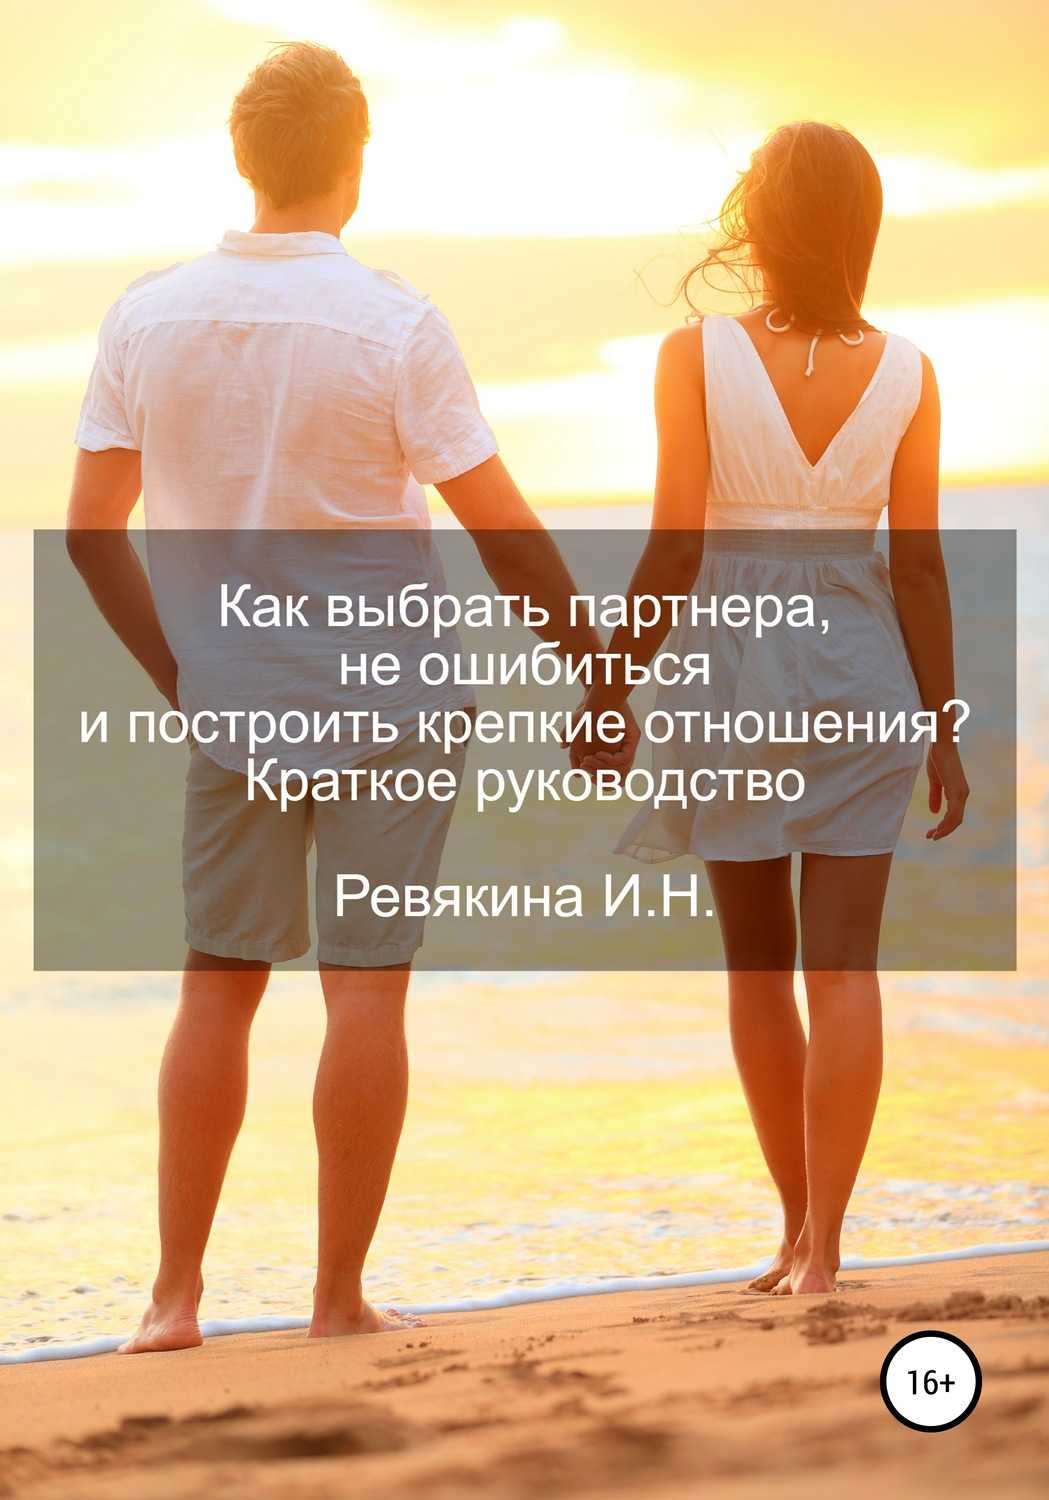 Как выбрать правильного мужчину? 10 шагов, чтобы обнаружить «того самого» в своем окружении | lisa.ru